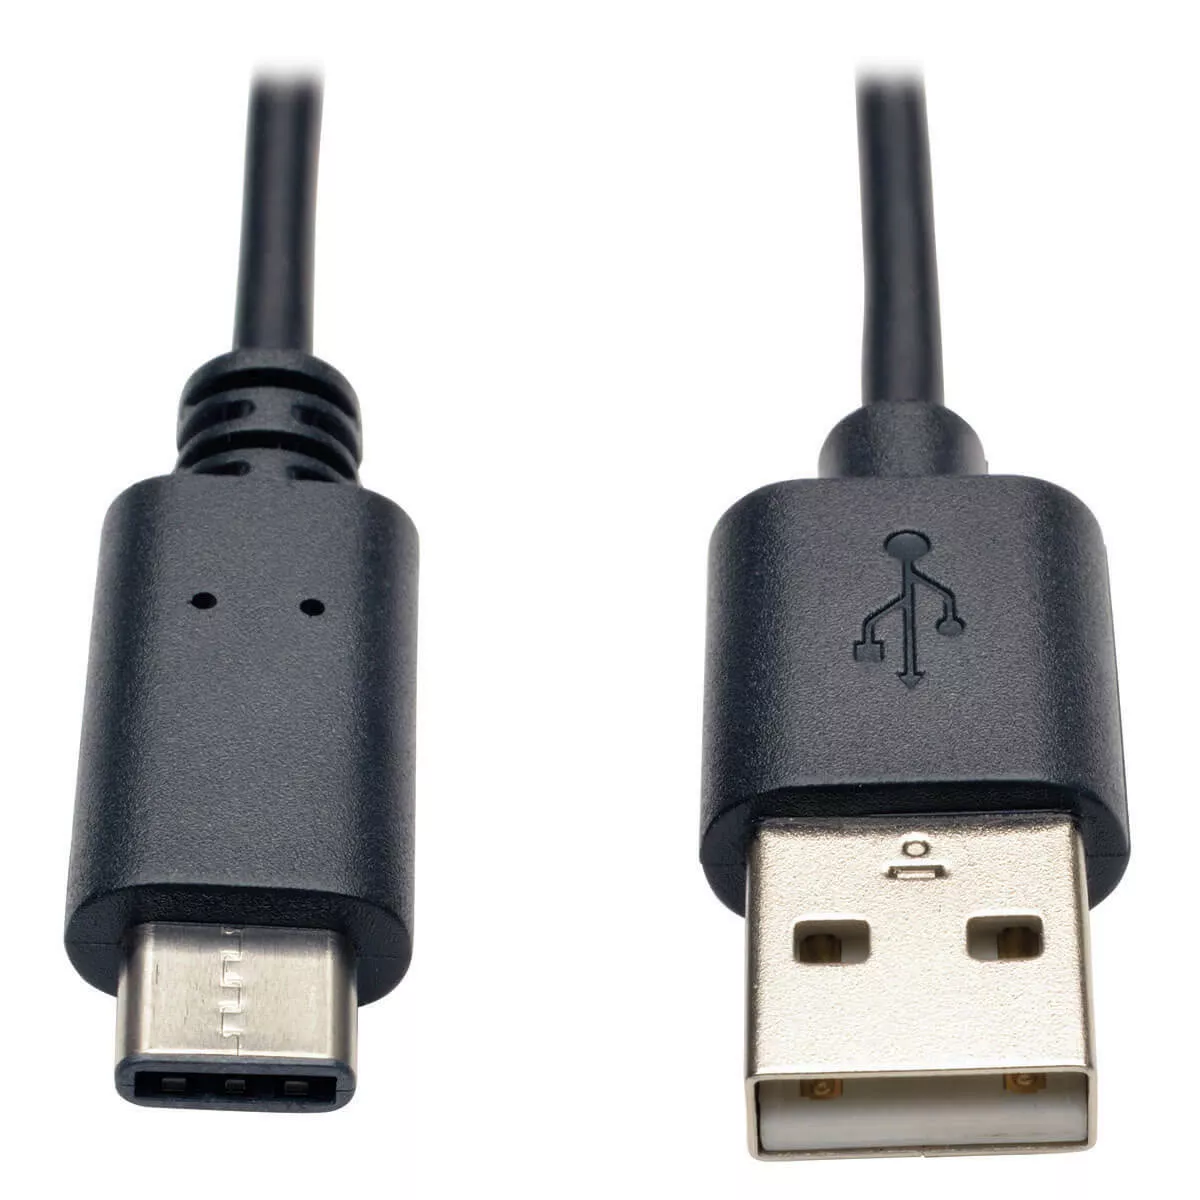 Achat EATON TRIPPLITE USB-A to USB-C Cable USB 2.0 M/M 6ft au meilleur prix